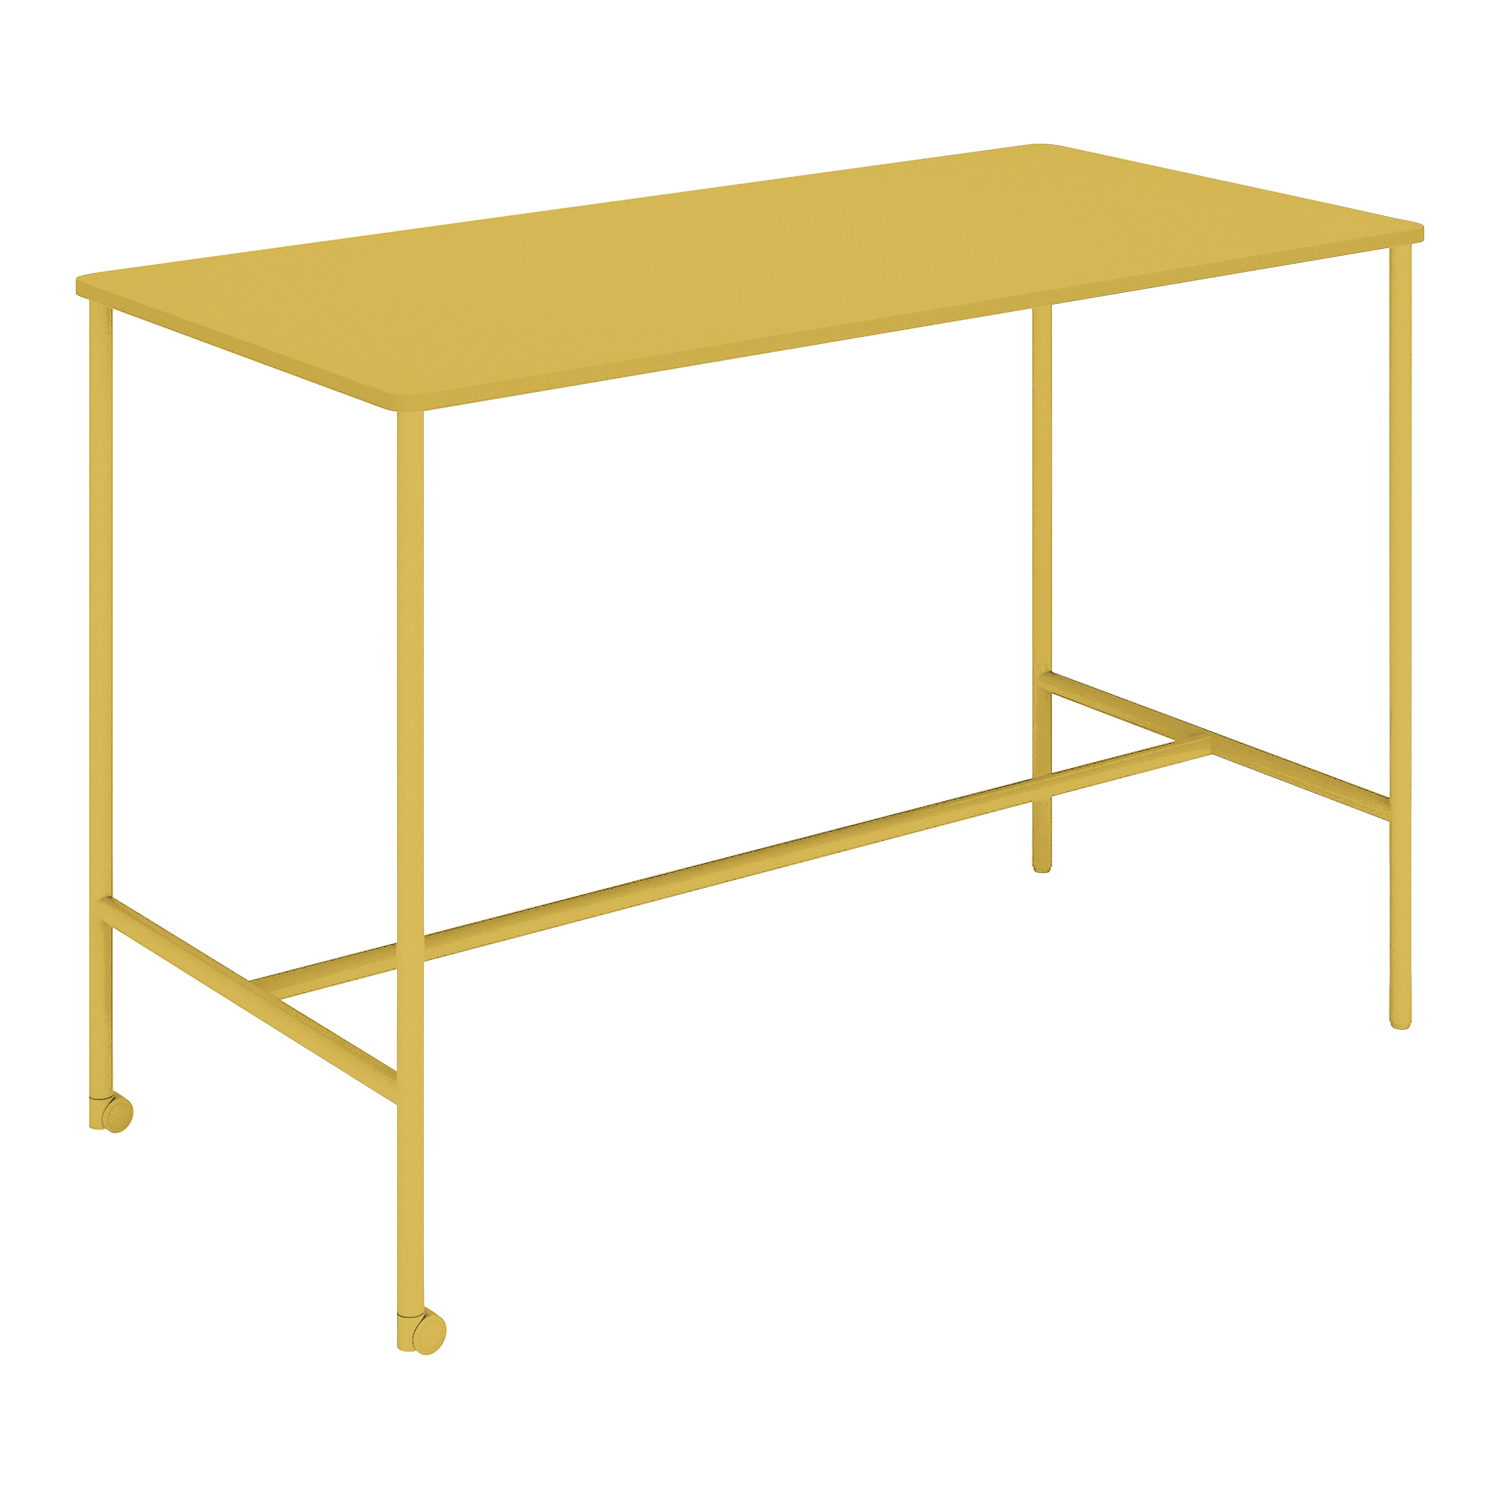 【ラクラク納品】コクヨ ミーティングテーブル Any Table エニー テーブル TAN-MK1507H1 角形 W150×D75×H100cm